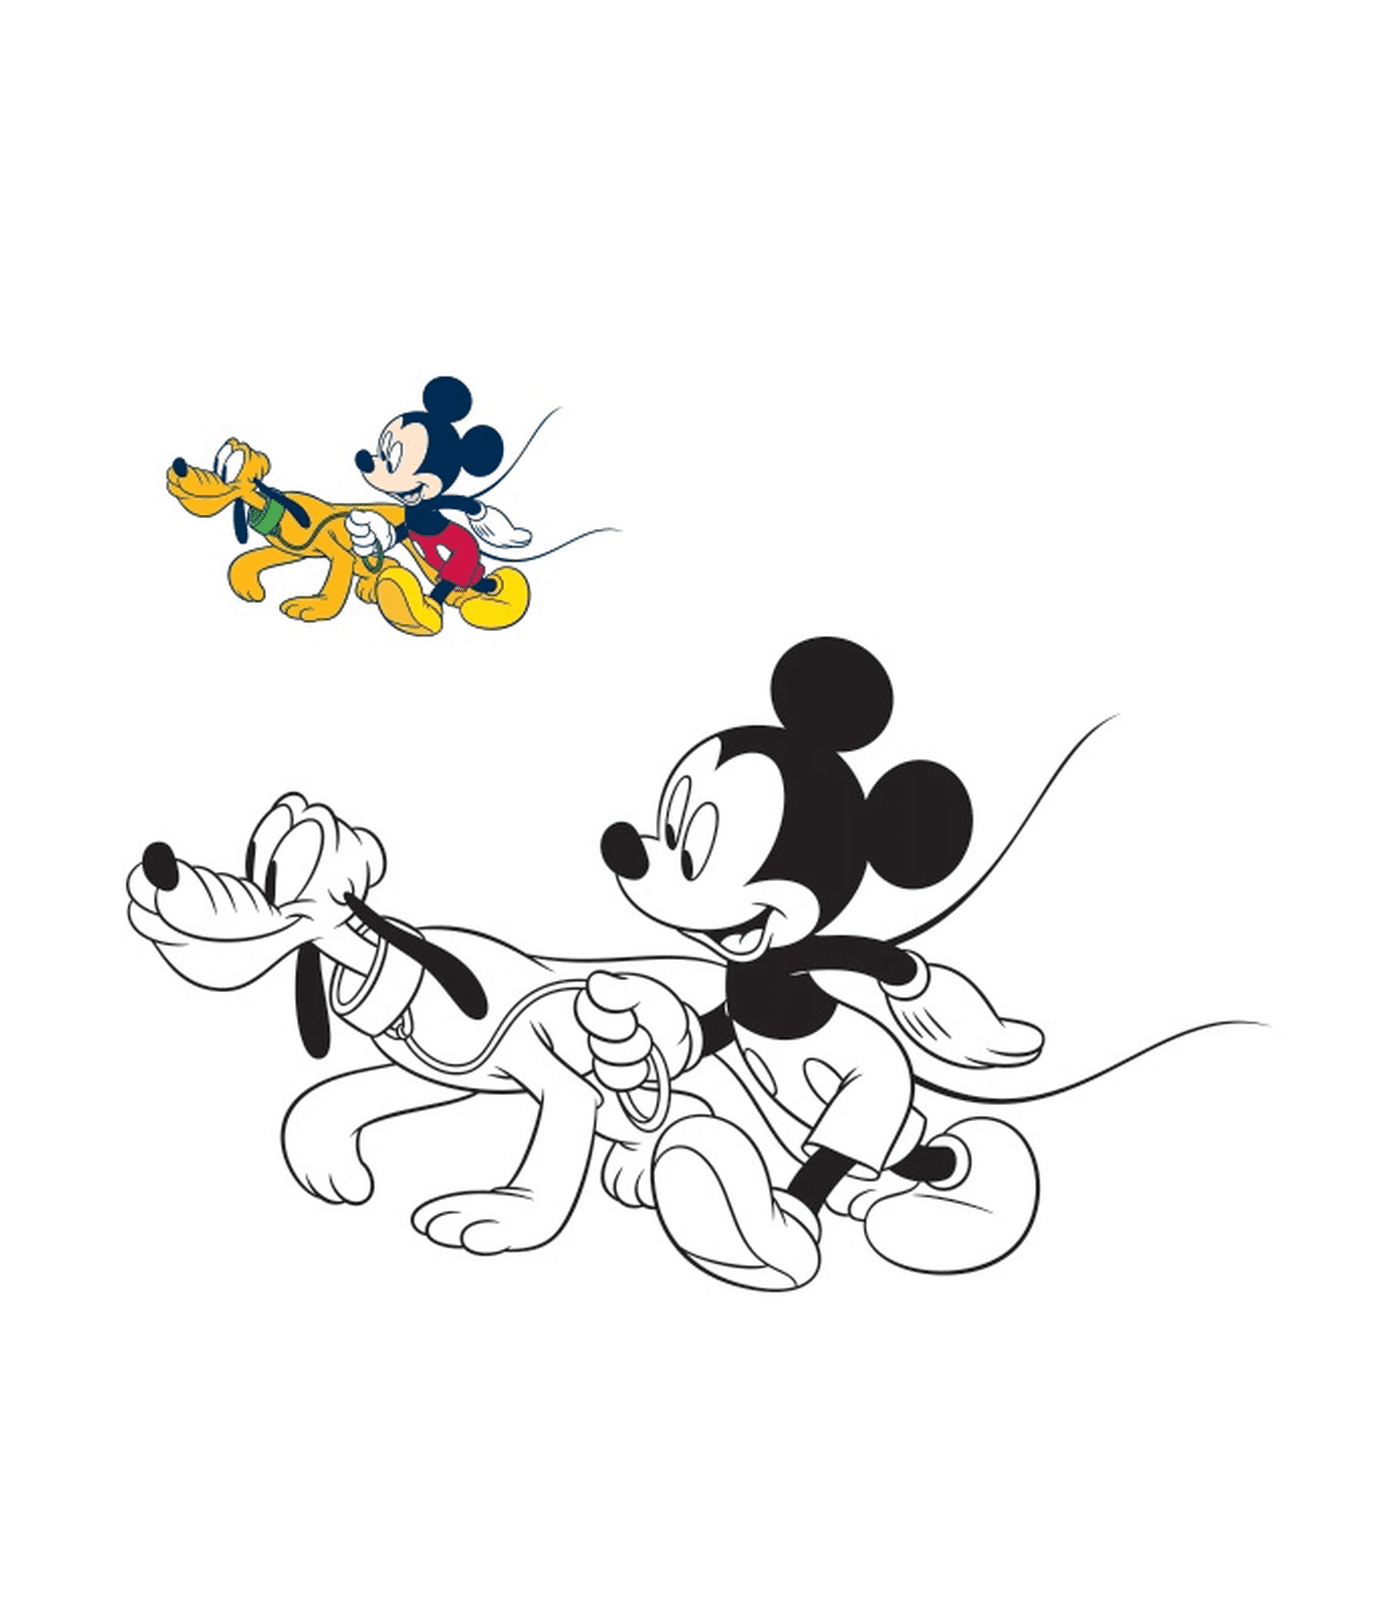  Mickey Maus geht mit seinem Hund Pluto 